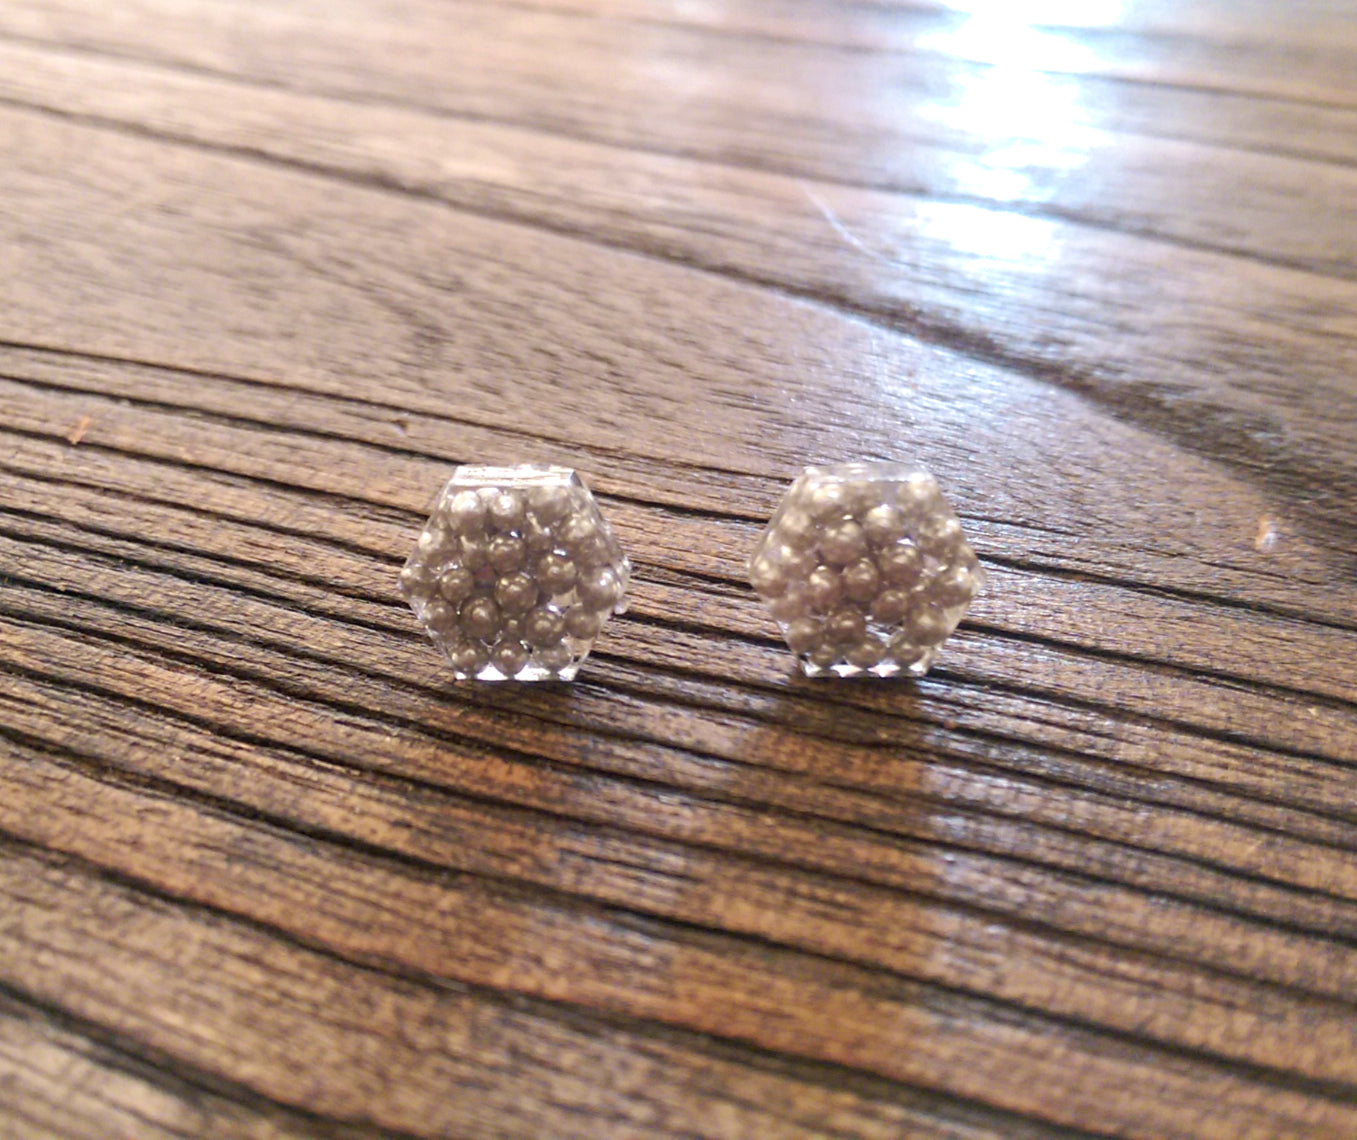 Hexagon Resin Stud Earrings, Silver Earrings. Stainless Steel Stud Earrings. 10mm - Silver and Resin Designs